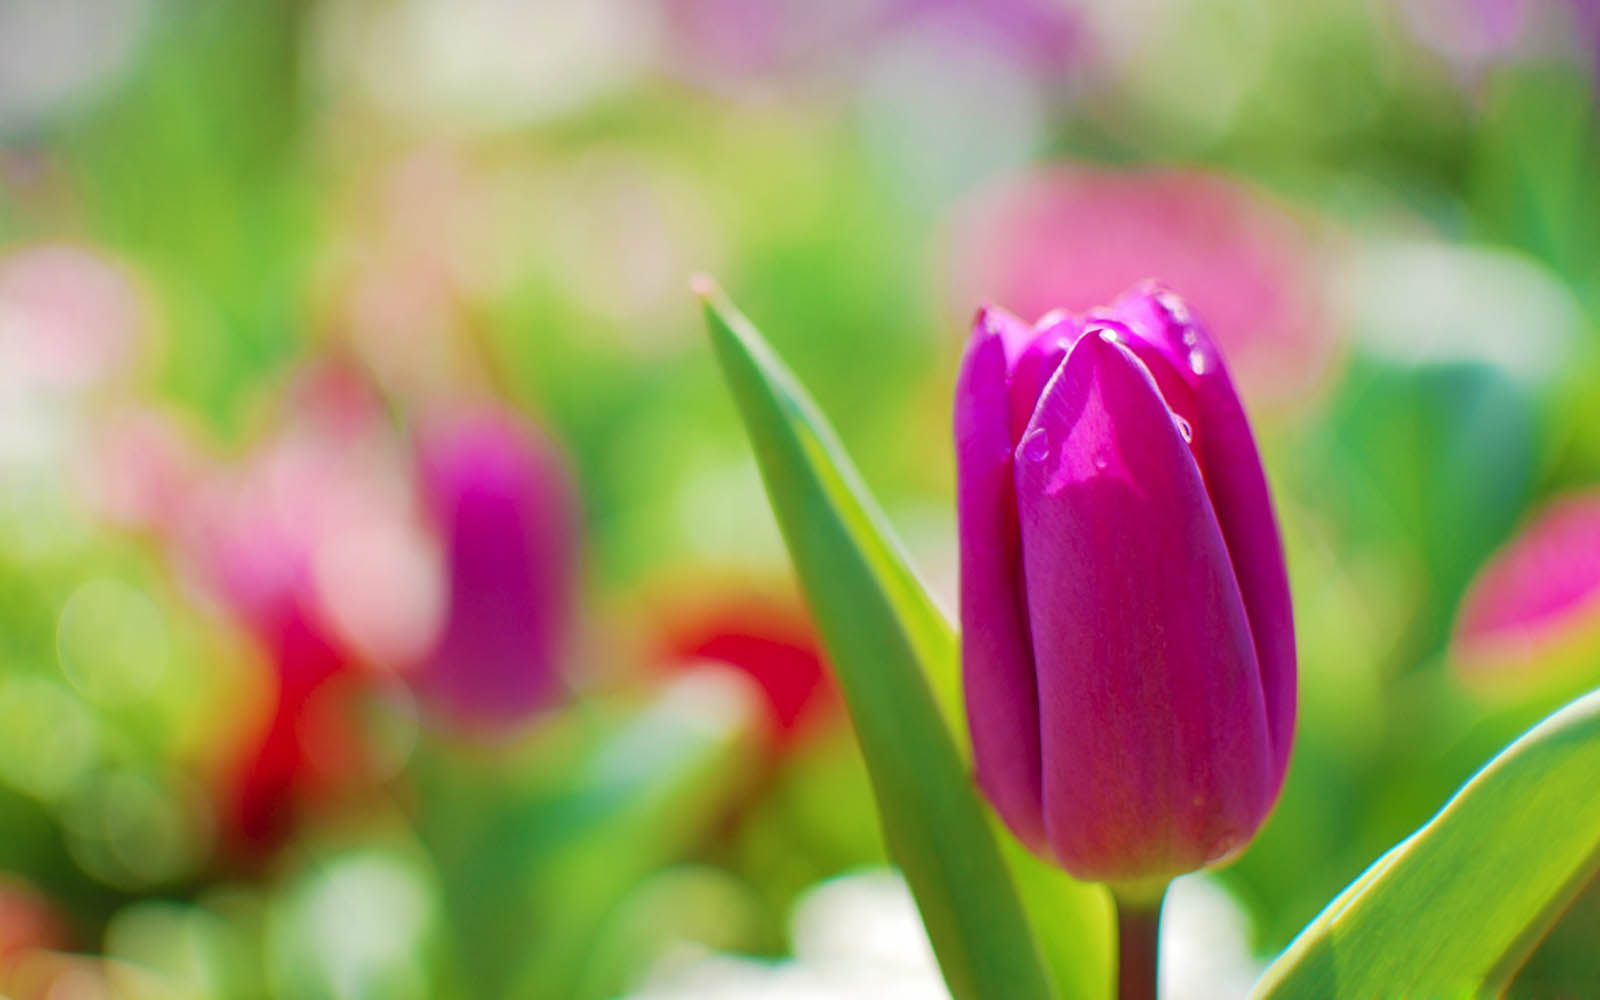 Hình nền hoa tulip tím miễn phí: Để tiết kiệm chi phí nhưng vẫn được trải nghiệm những bức ảnh hoa tulip tím đẹp mắt, hình nền hoa tulip tím miễn phí sẽ là sự lựa chọn hoàn hảo. Tận hưởng vẻ đẹp của những chùm hoa tulip tím trên nền trắng tinh khôi và cảm nhận sự thư thái mỗi khi mở khóa điện thoại.